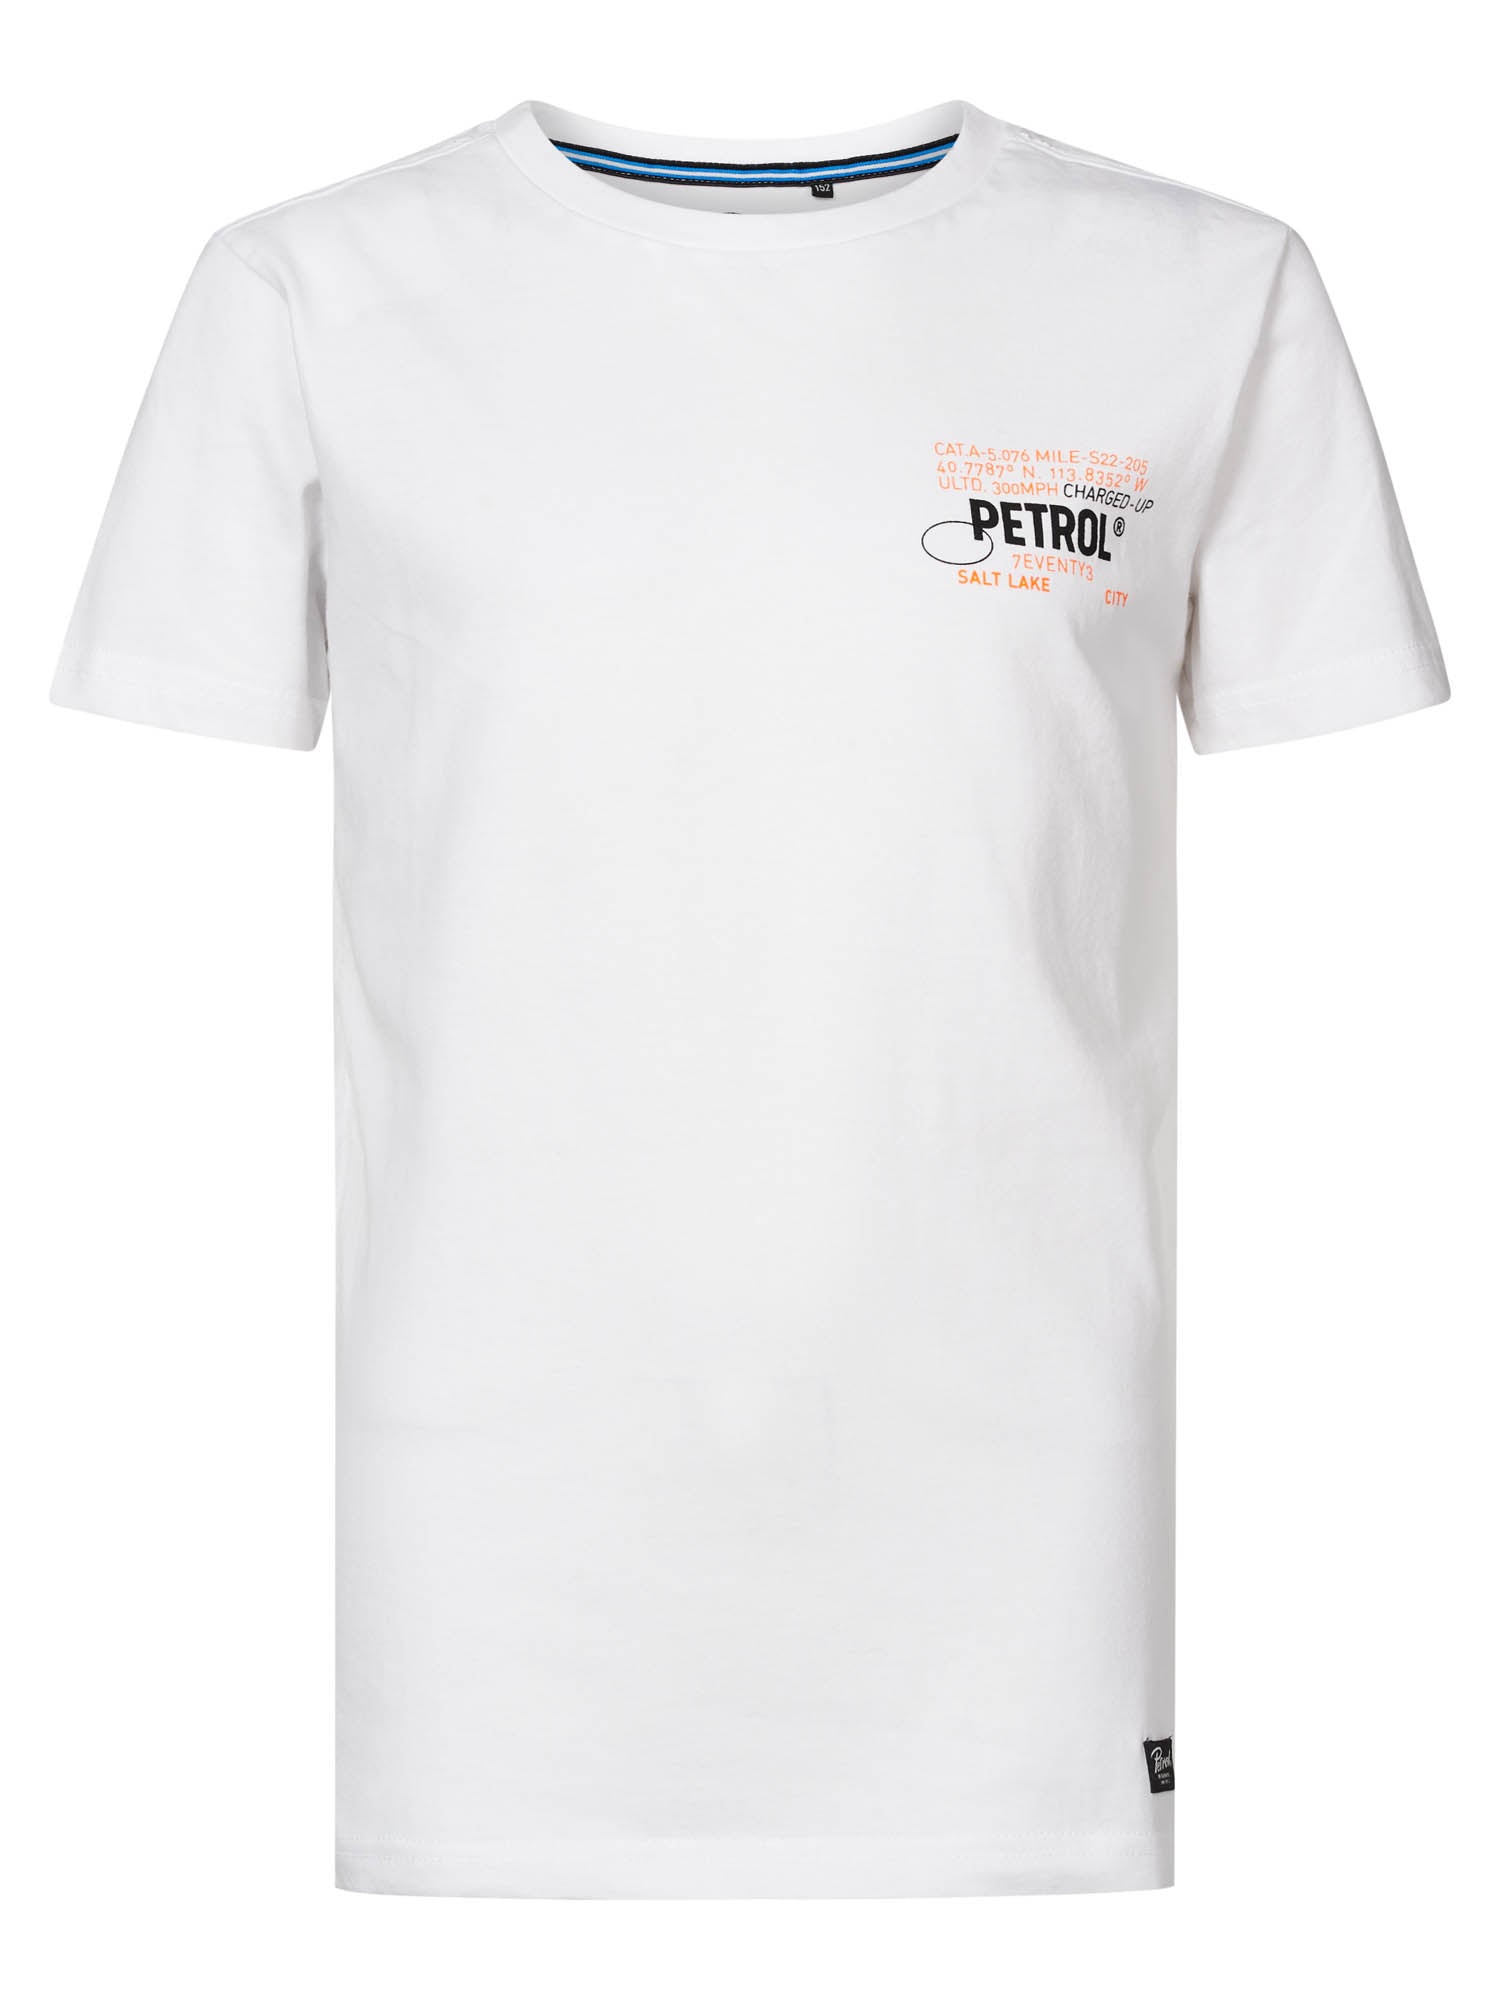 Jongens T-shirt   van Petrol in de kleur Bright White in maat 176.